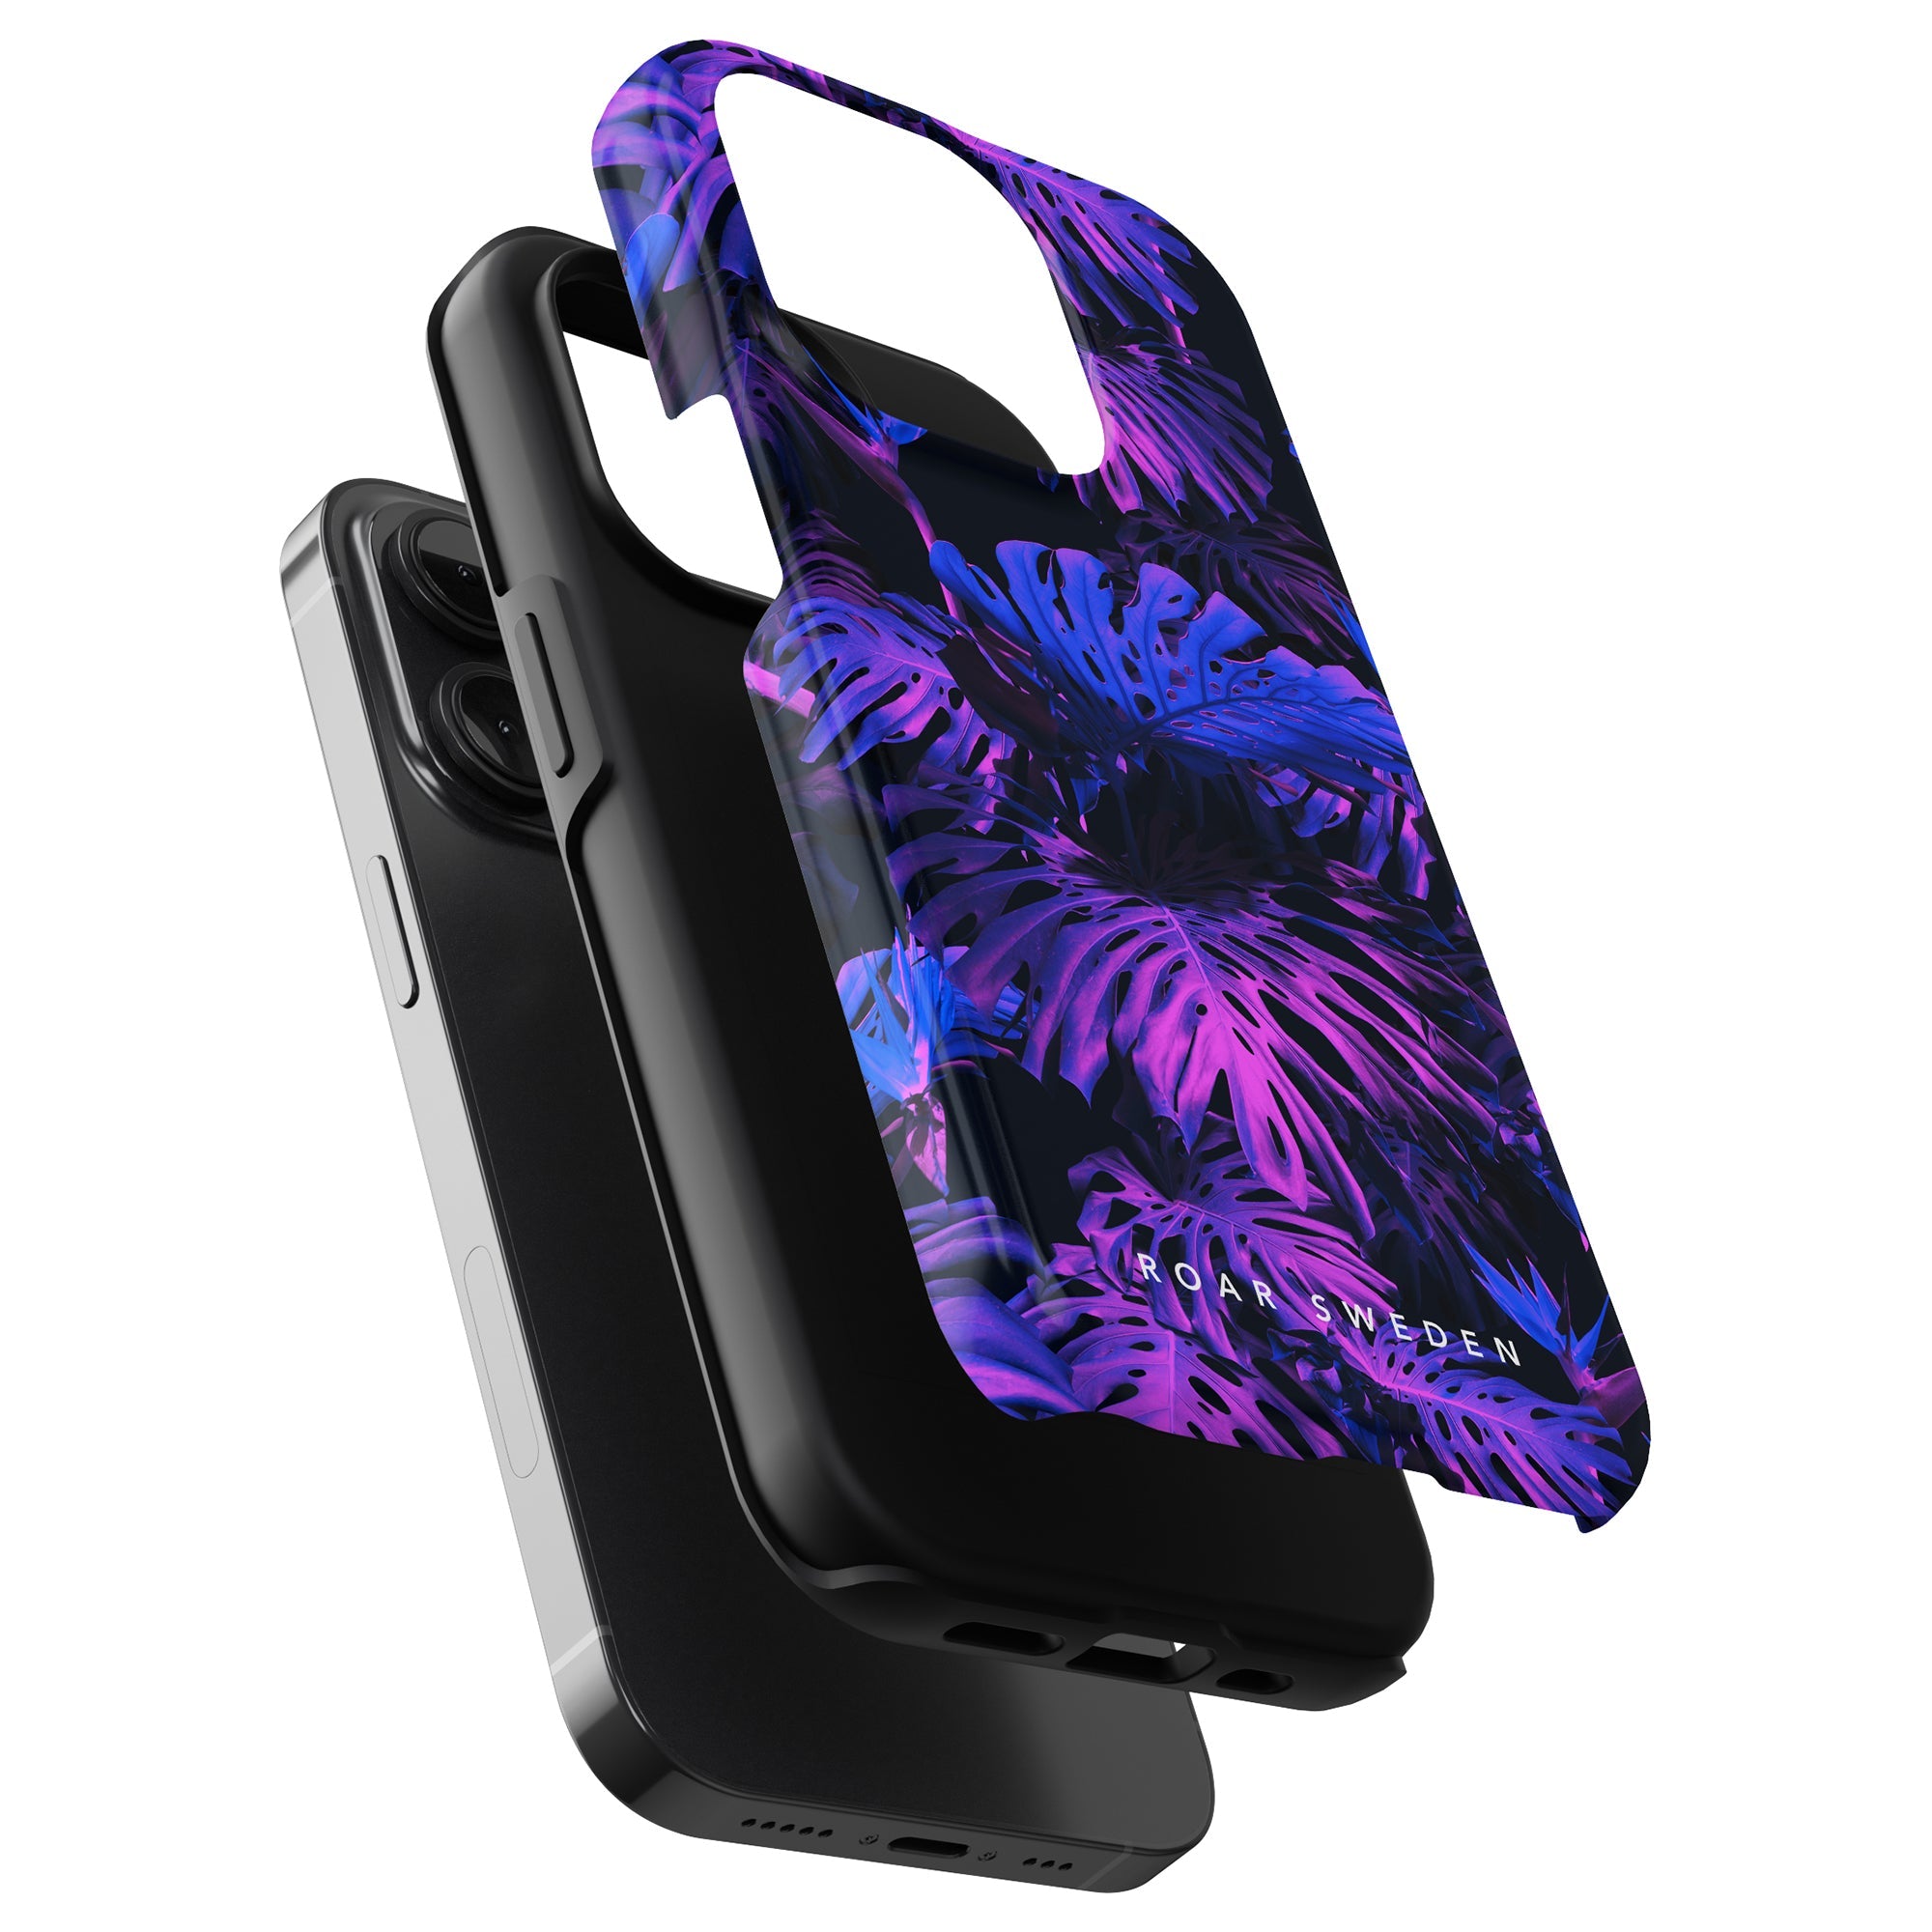 A Monstera Night - Tufft fodral med lila och blått tropiskt tryck för din iPhone 11 pro.